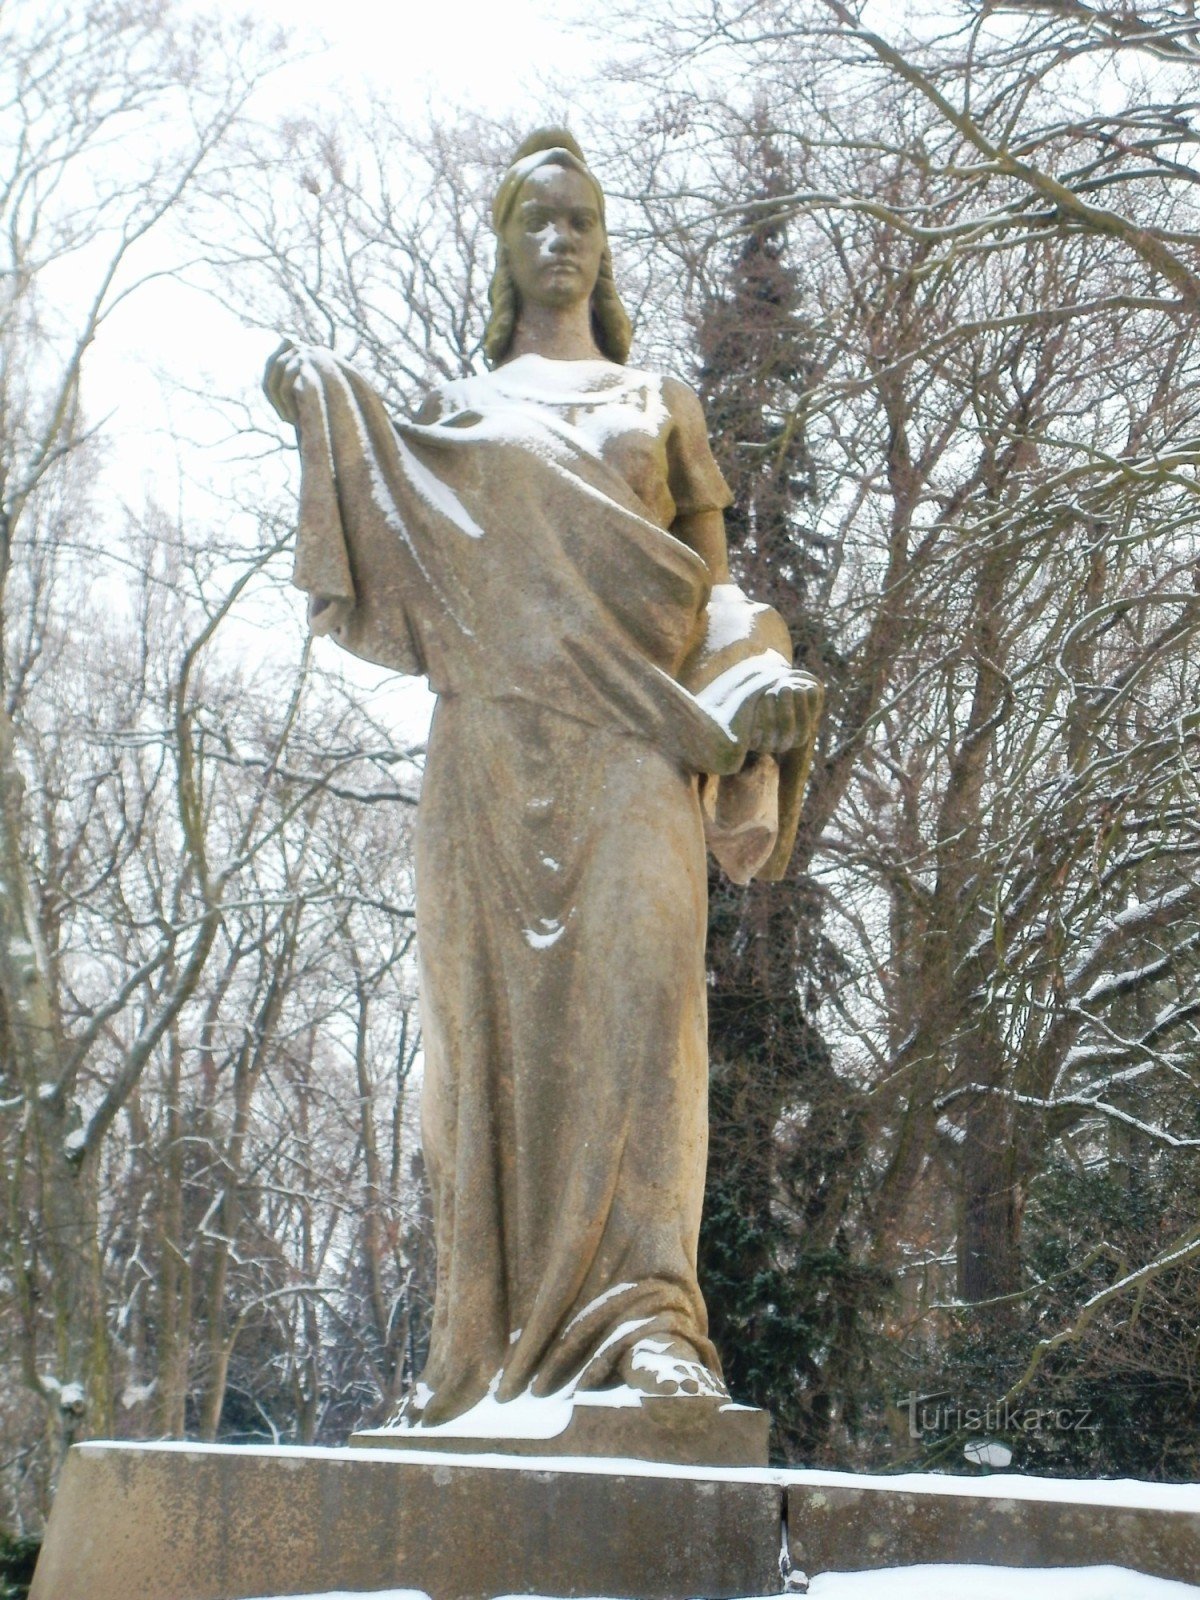 Smiřice - tượng đài của cuộc kháng chiến và 2 St. chiến tranh